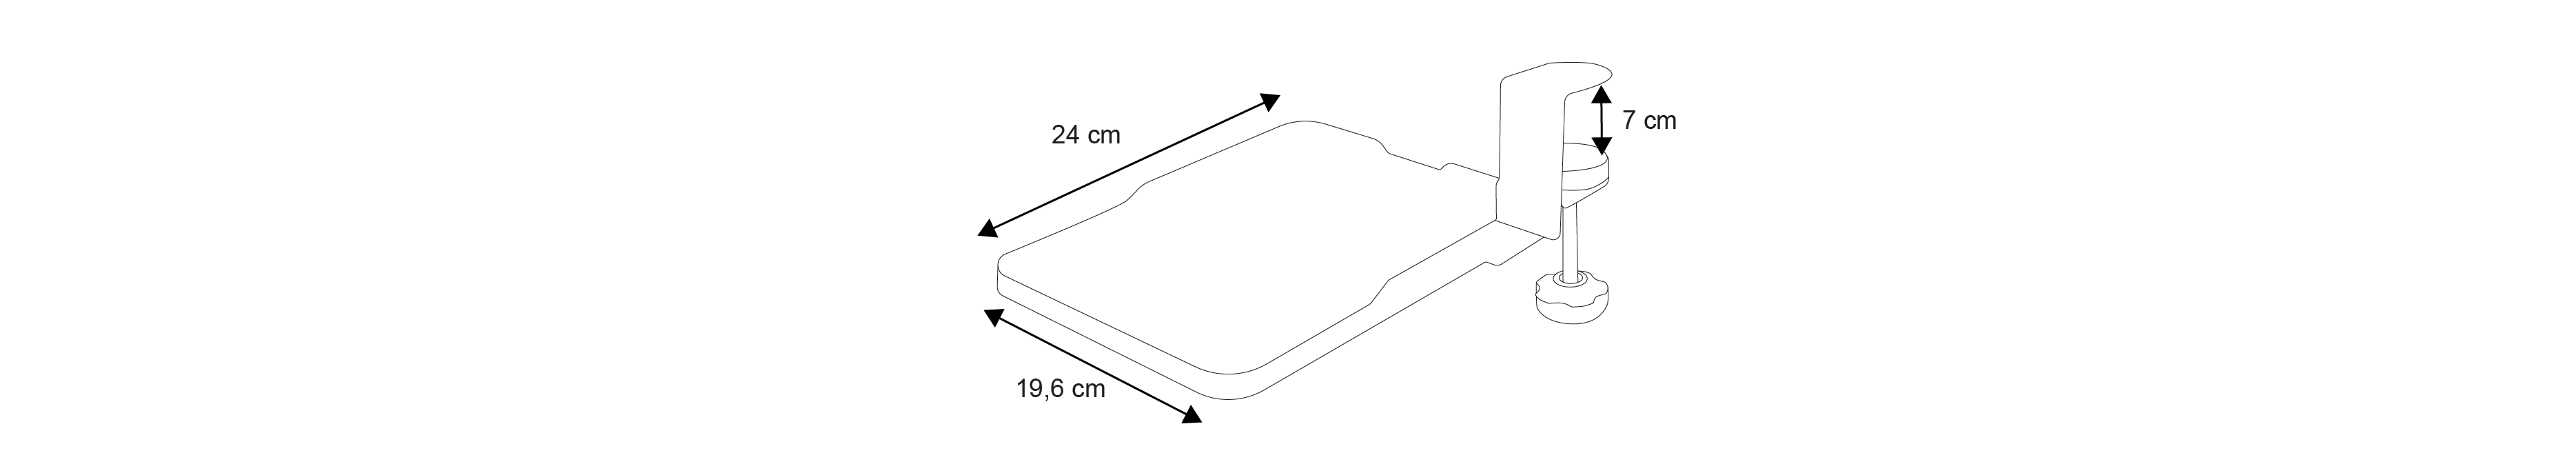 plan et dimensions tapis de souris rétractable noir pour bureau Kqueo